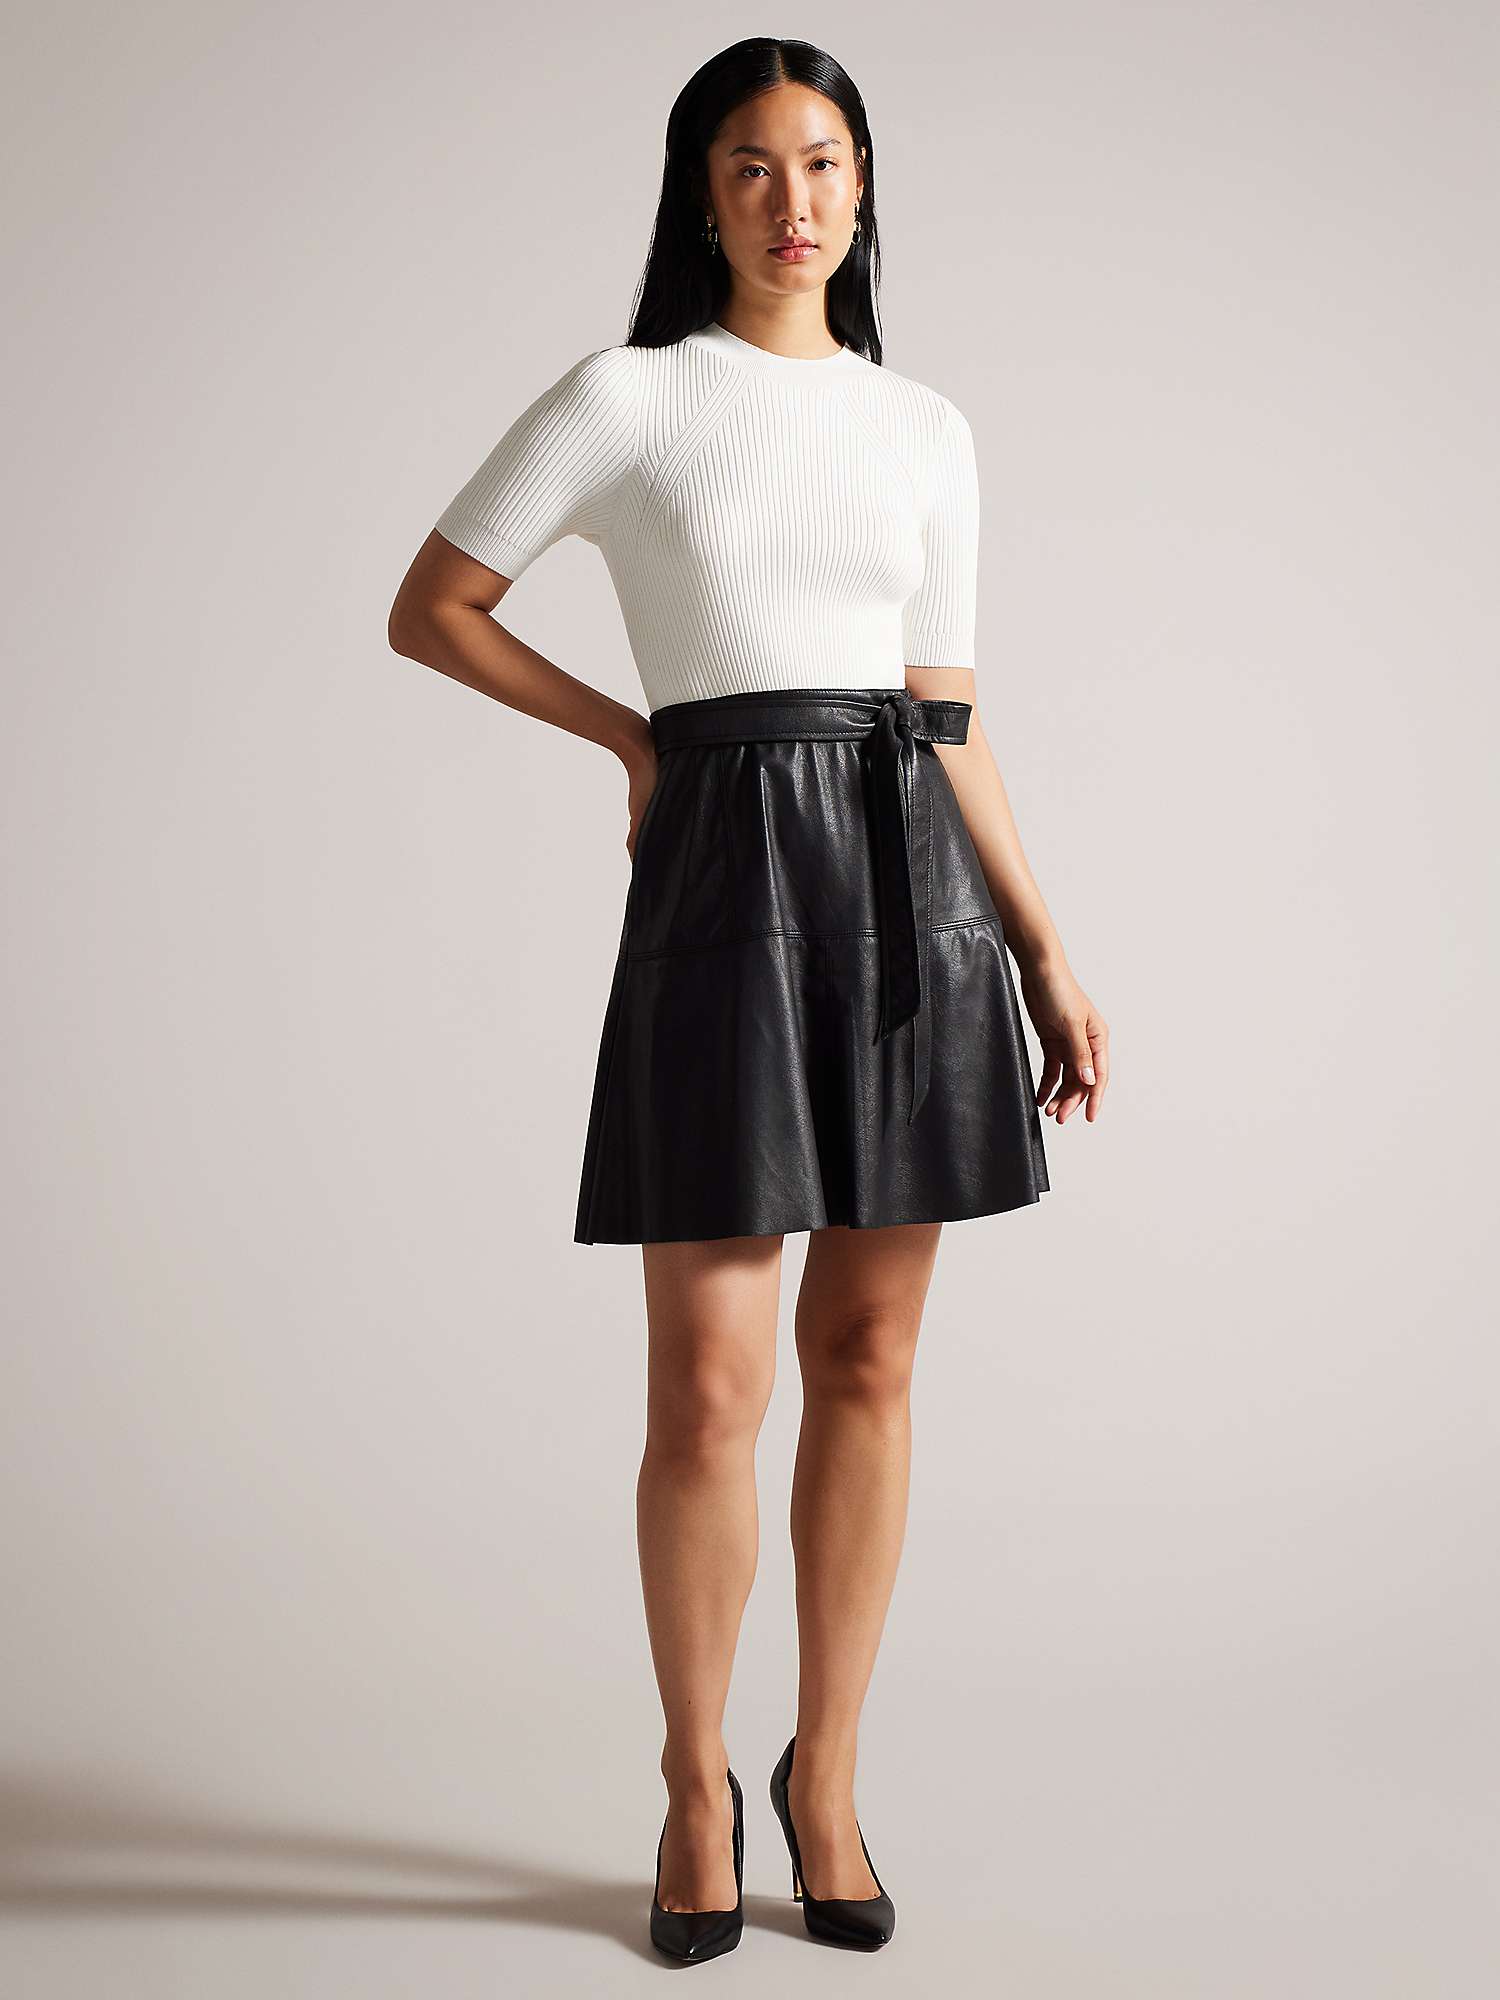 Buy Ted Baker Oliyia Short Sleeve A Line Mini Dress, White/Black Online at johnlewis.com